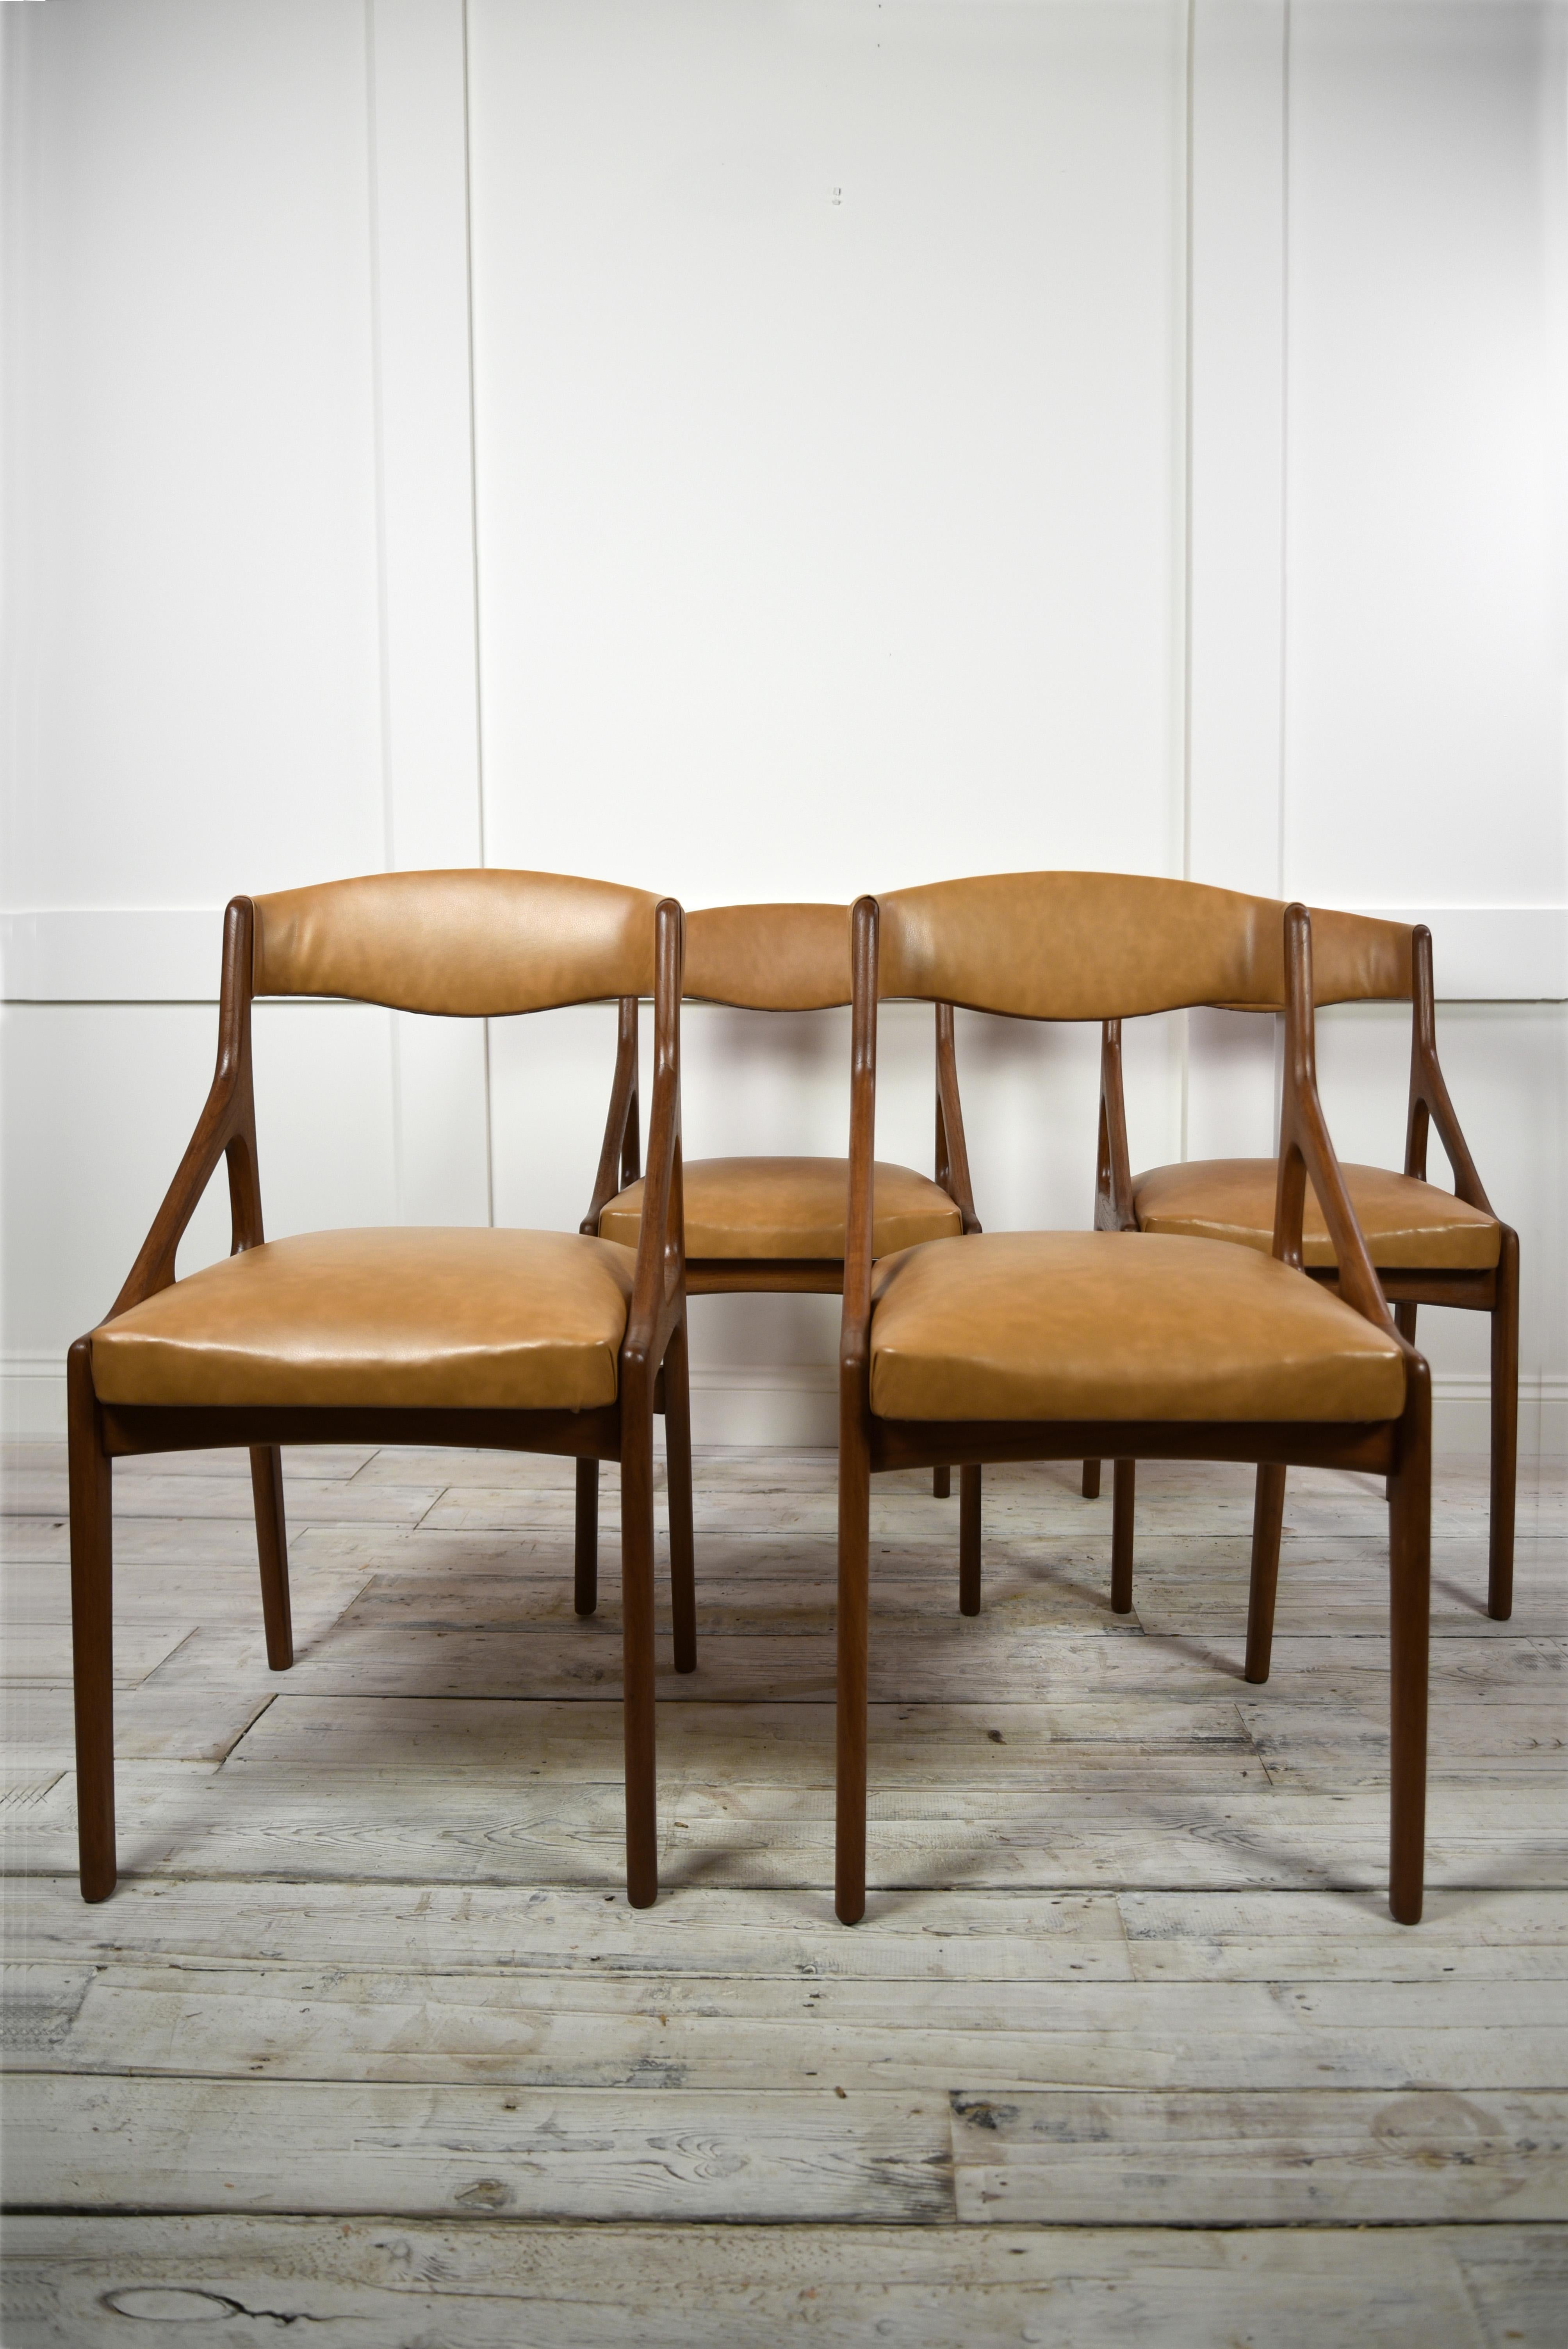 Ein Satz von vier modernen Esszimmerstühlen aus der Mitte des Jahrhunderts, gefertigt aus hochwertigem Teakholz und luxuriöser Kunstlederpolsterung in Braun. Diese Stühle wurden um 1960 in Italien im Stil der Entwürfe des renommierten Designers Kai